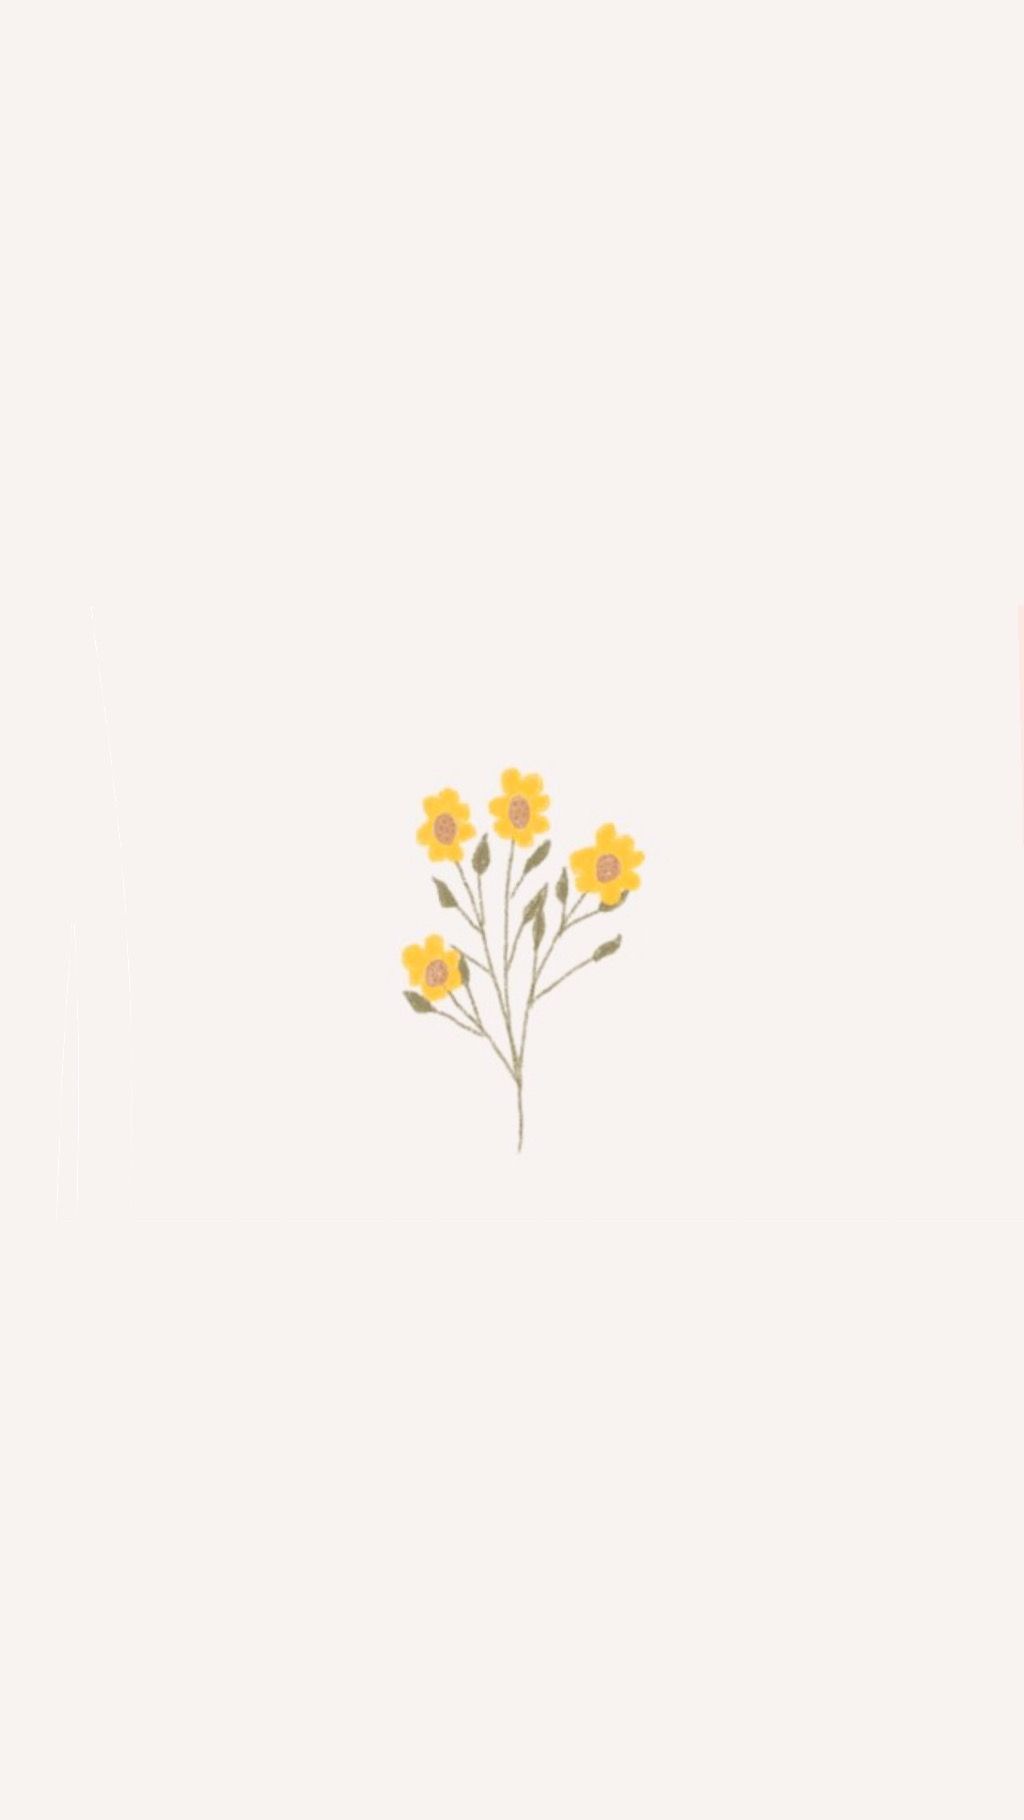 [31+] Aesthetic Flowers Simple Wallpapers | WallpaperSafari.com